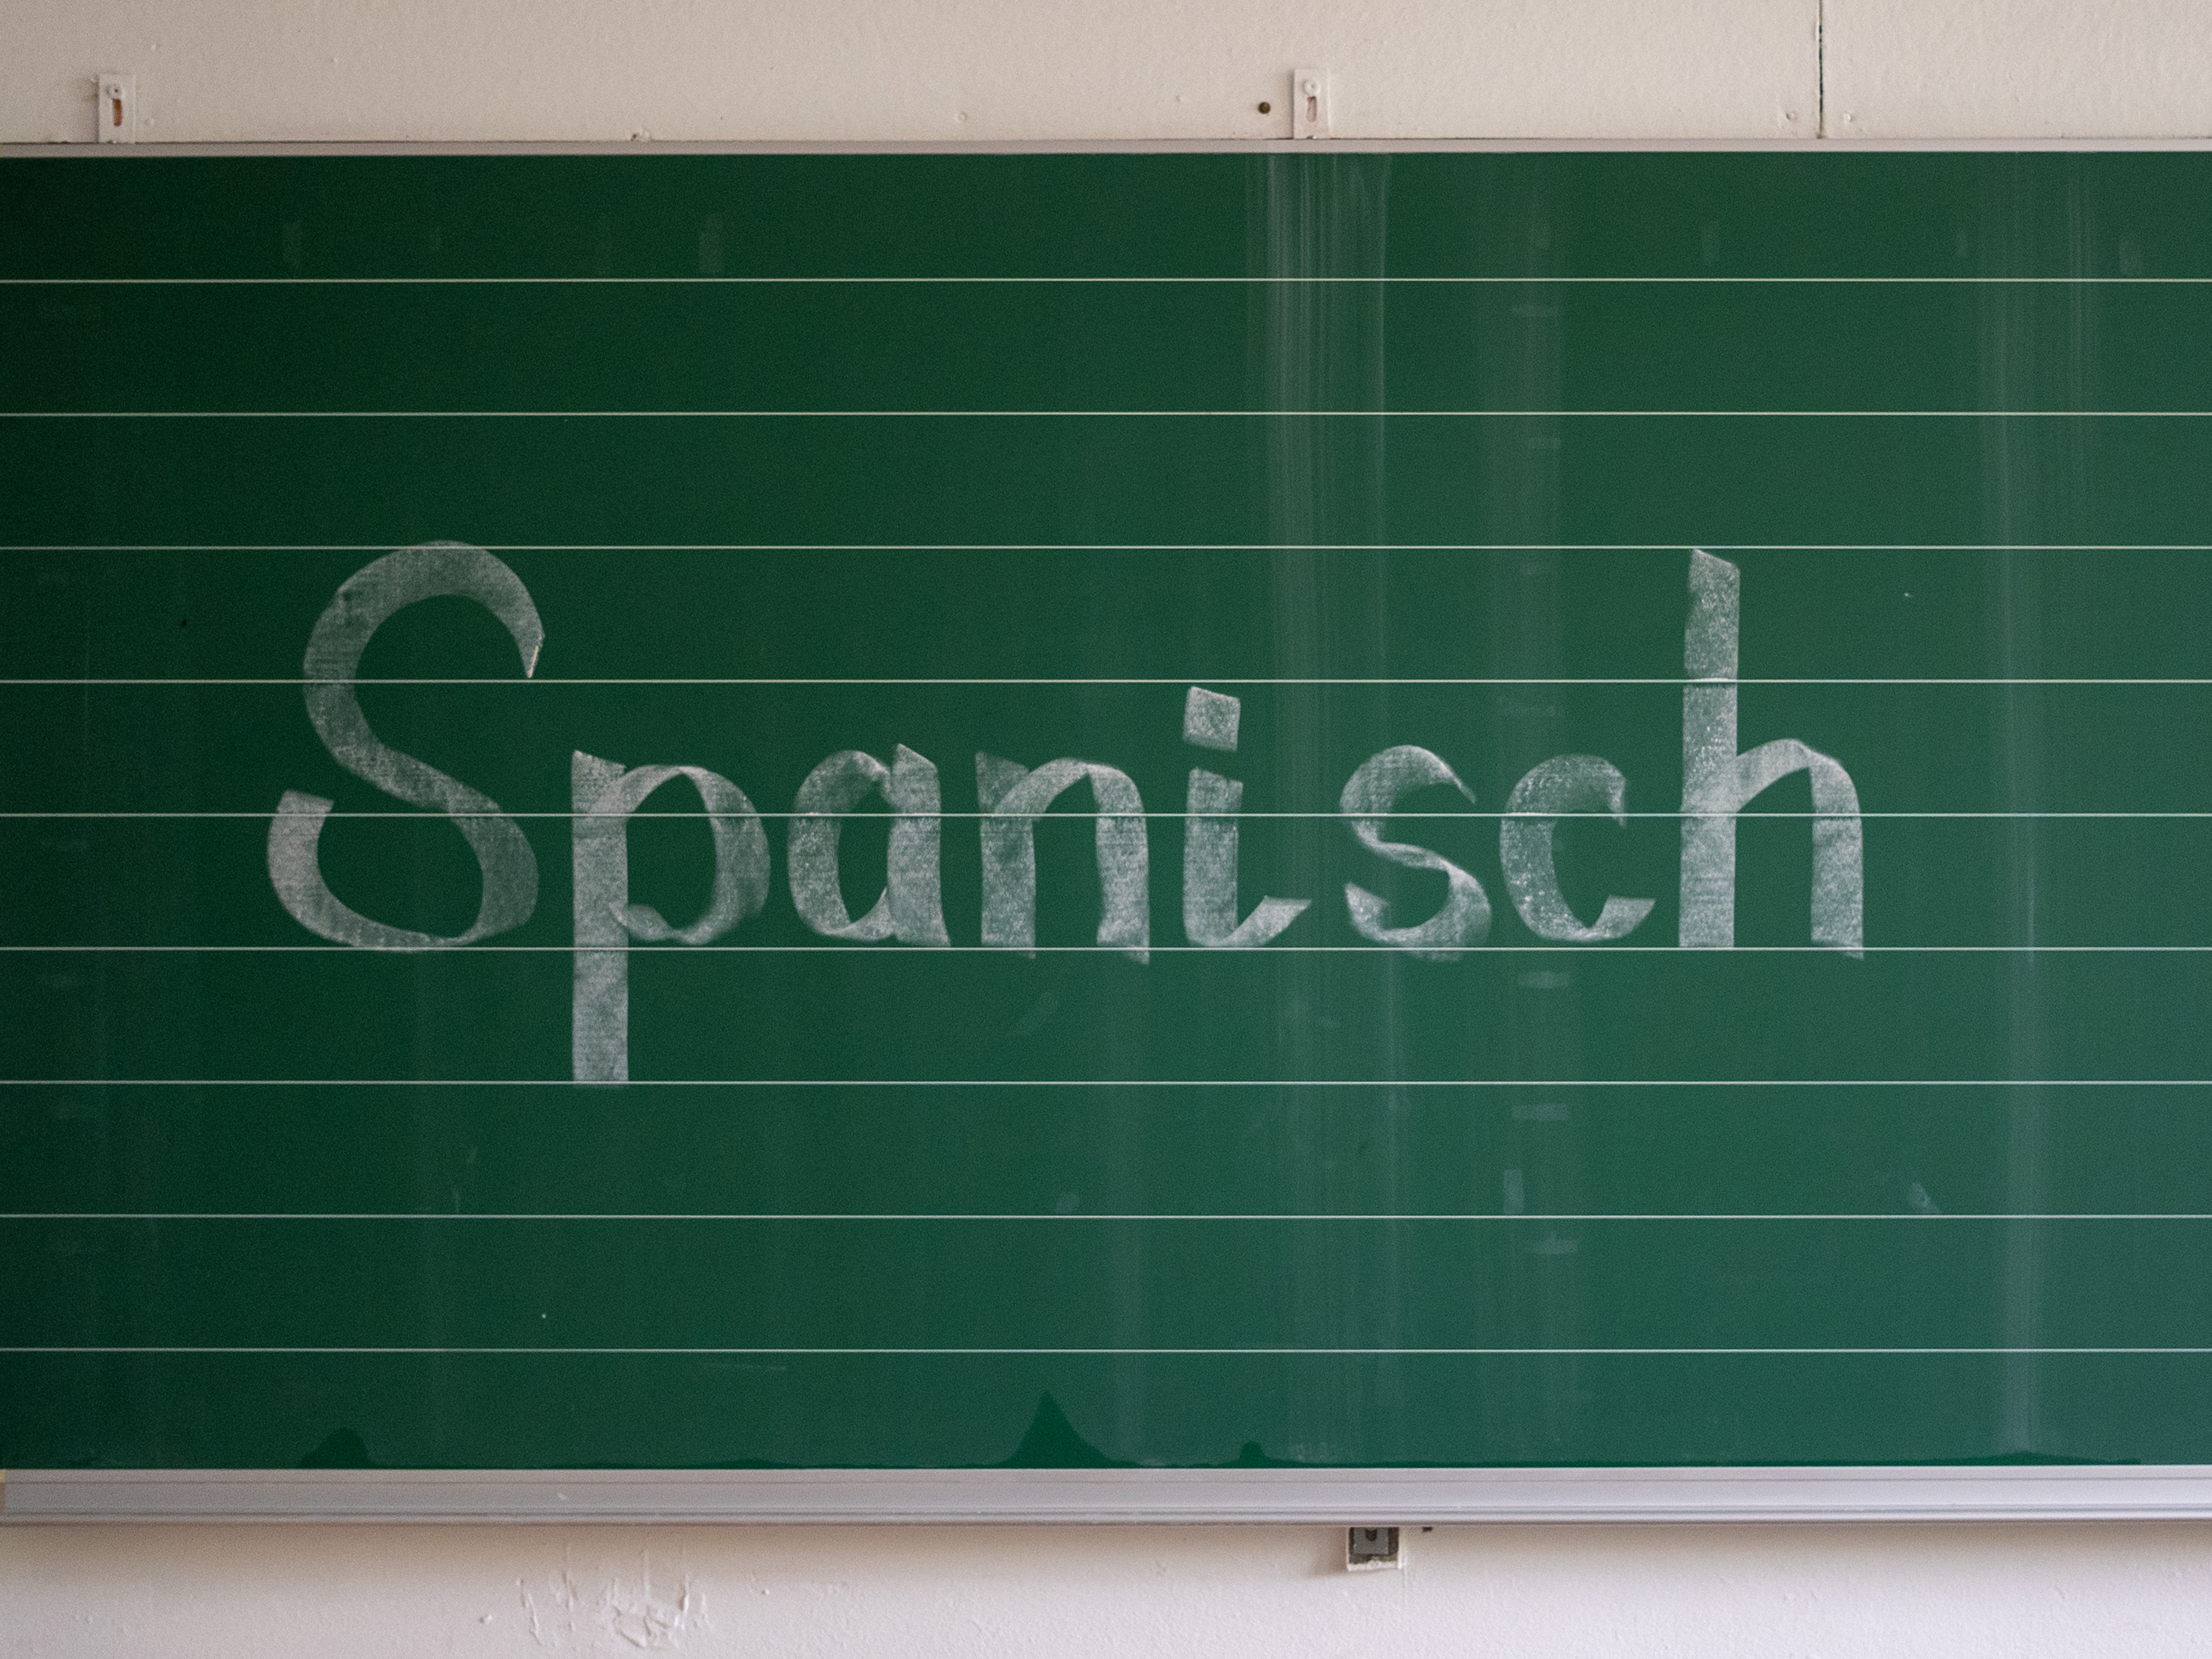 Tafel, auf der das Wort "Spanisch" steht